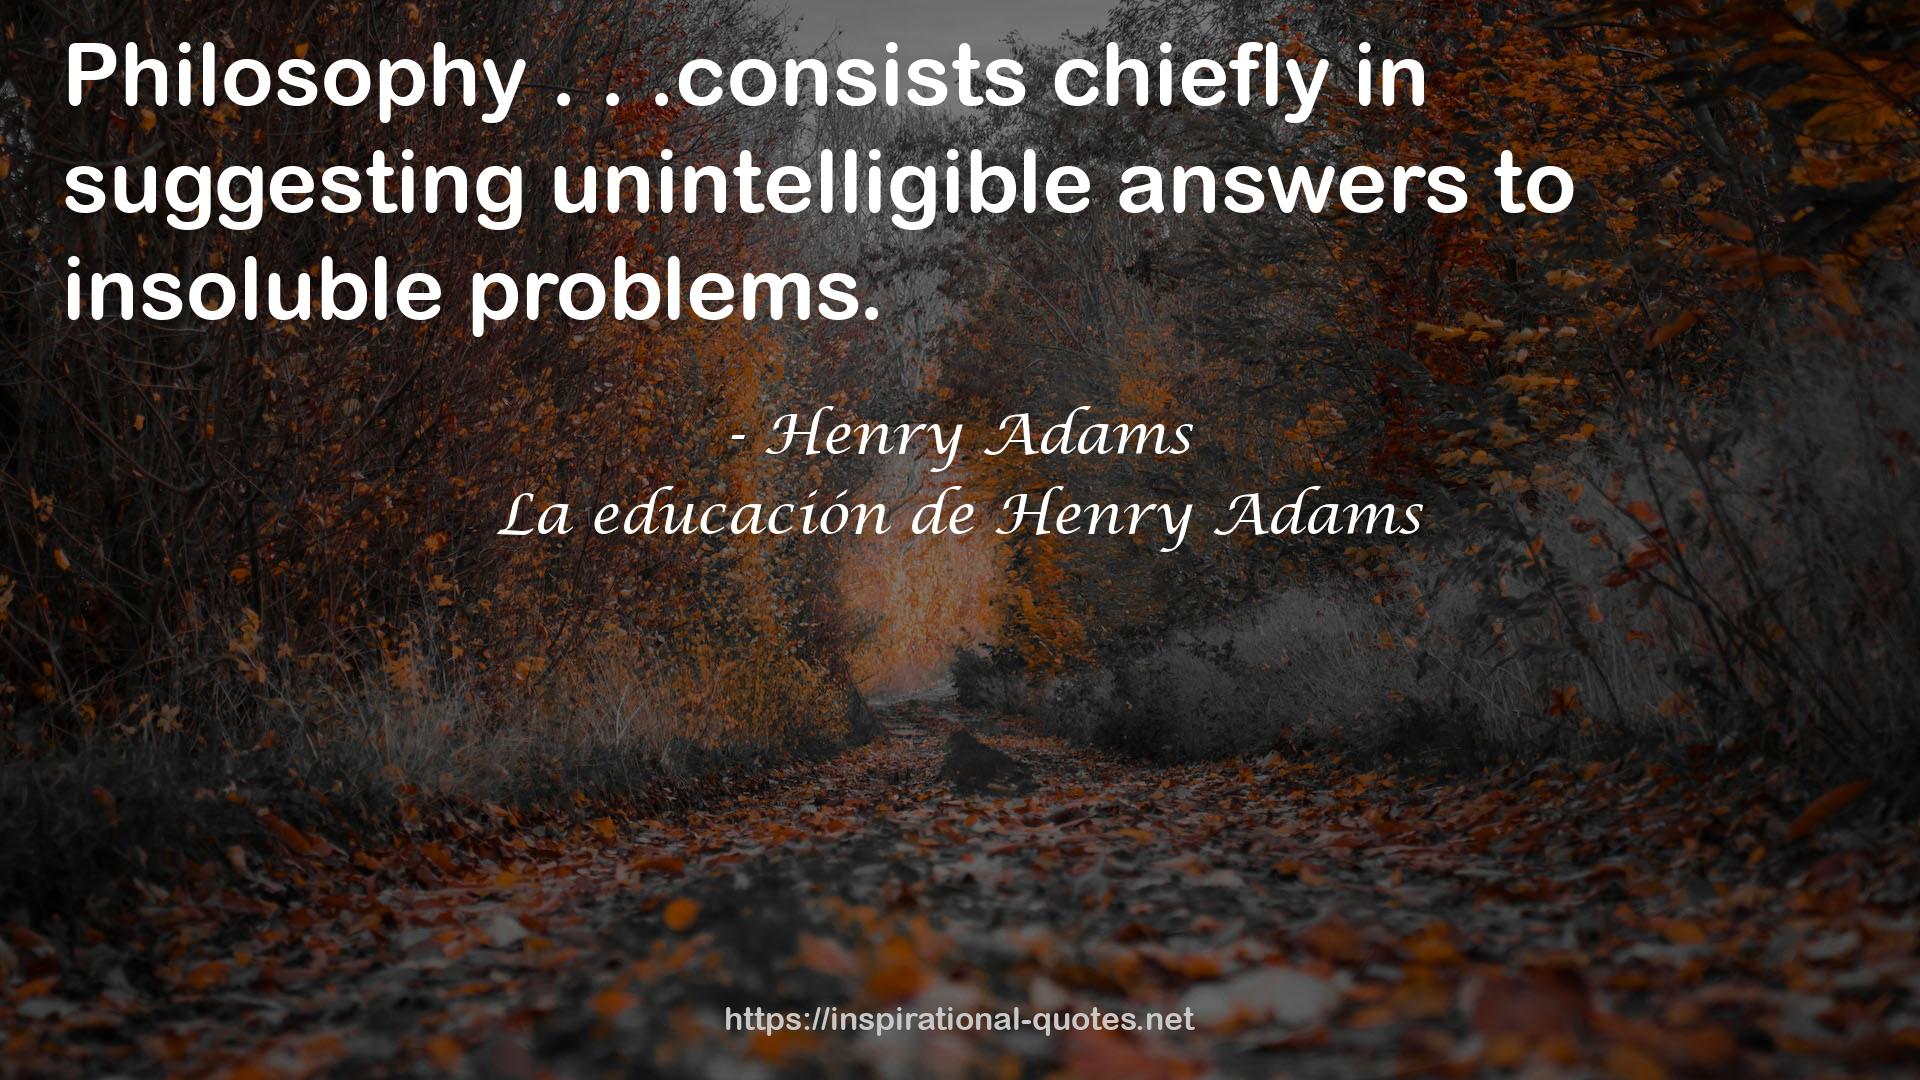 La educación de Henry Adams QUOTES